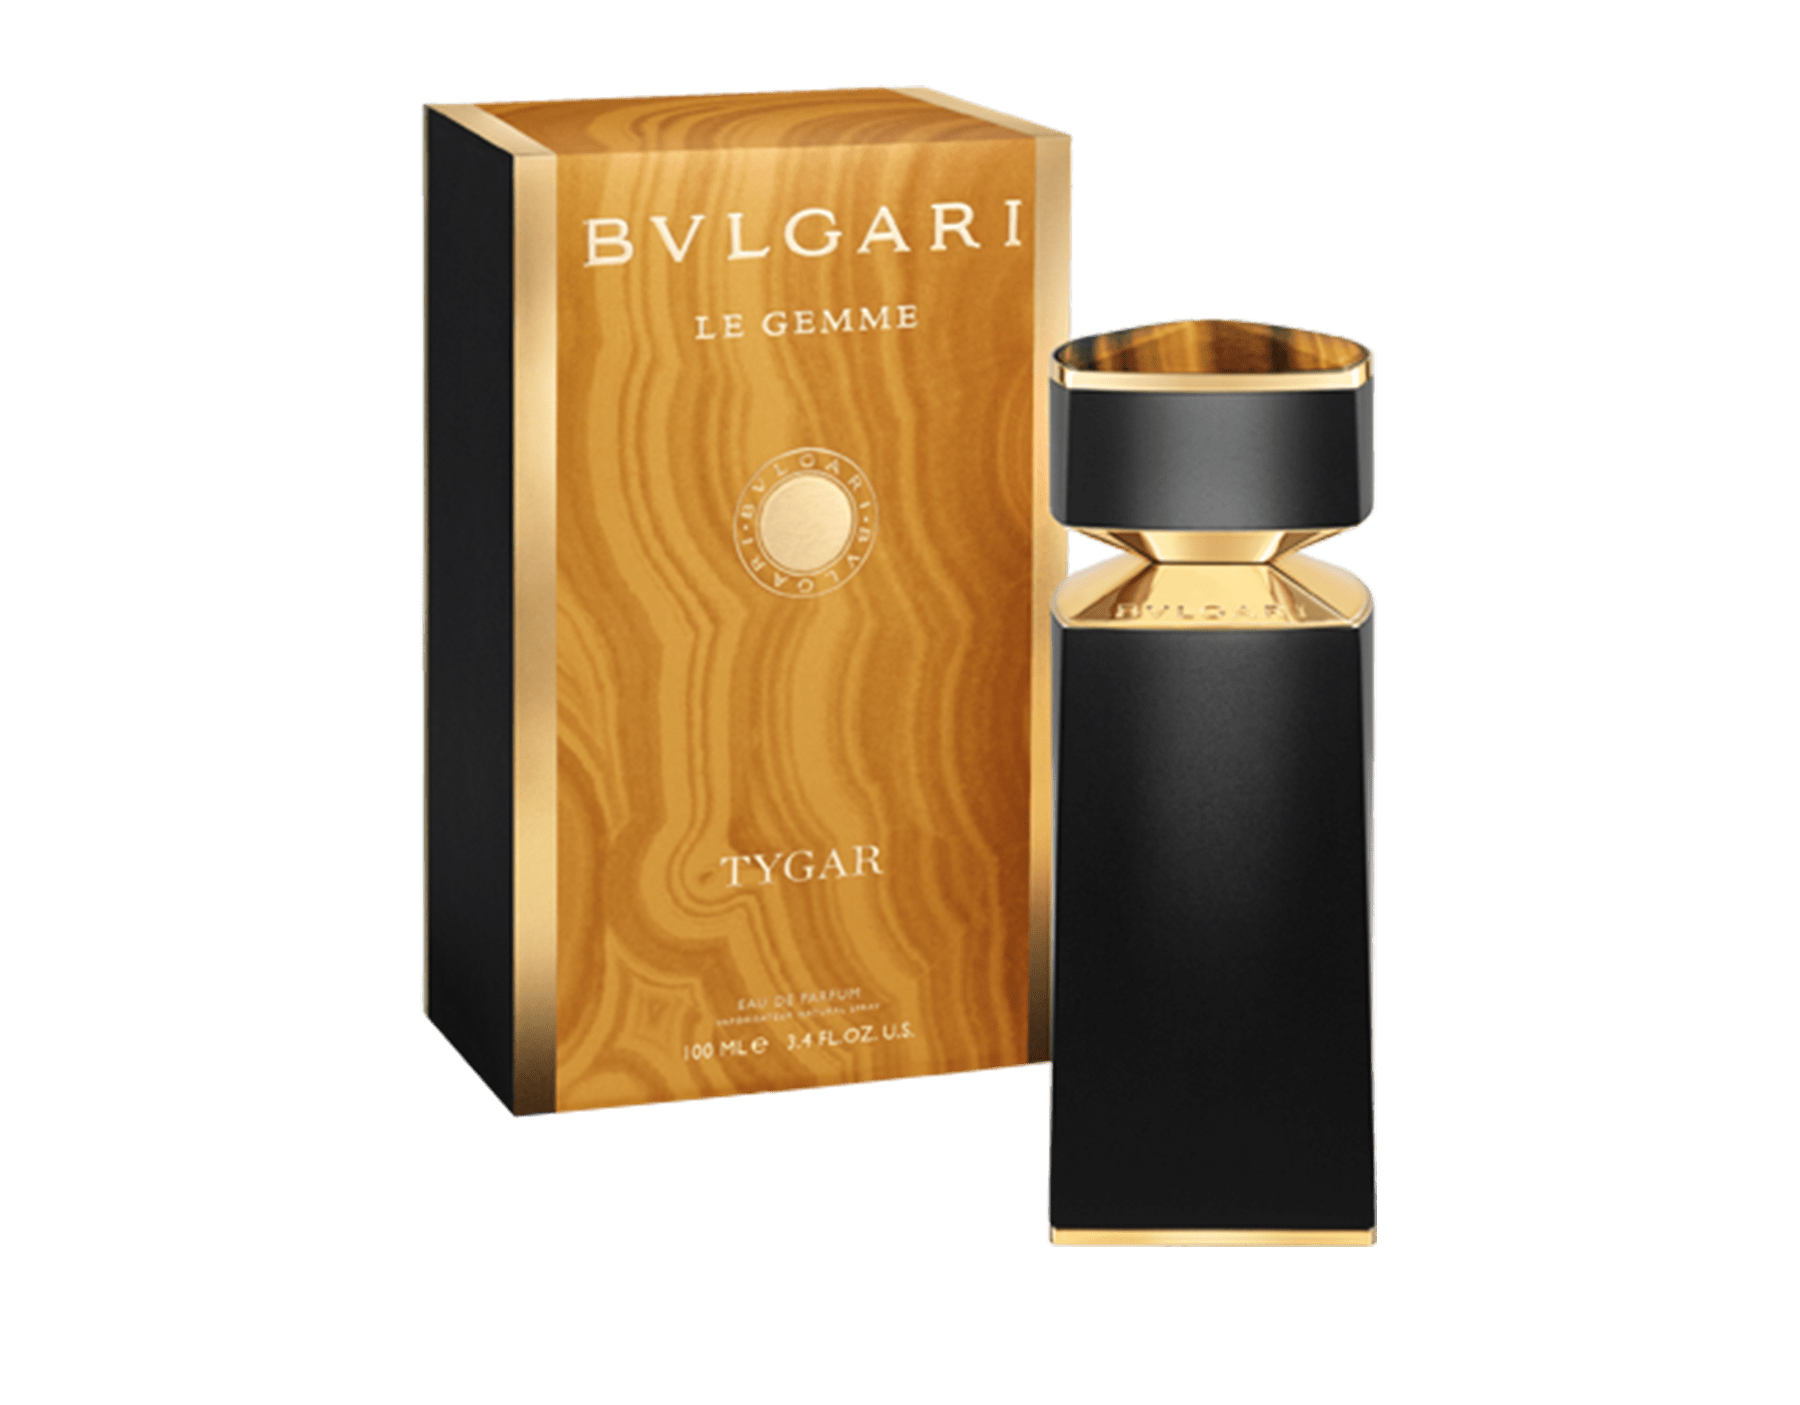 bvlgari perfume brown bottle